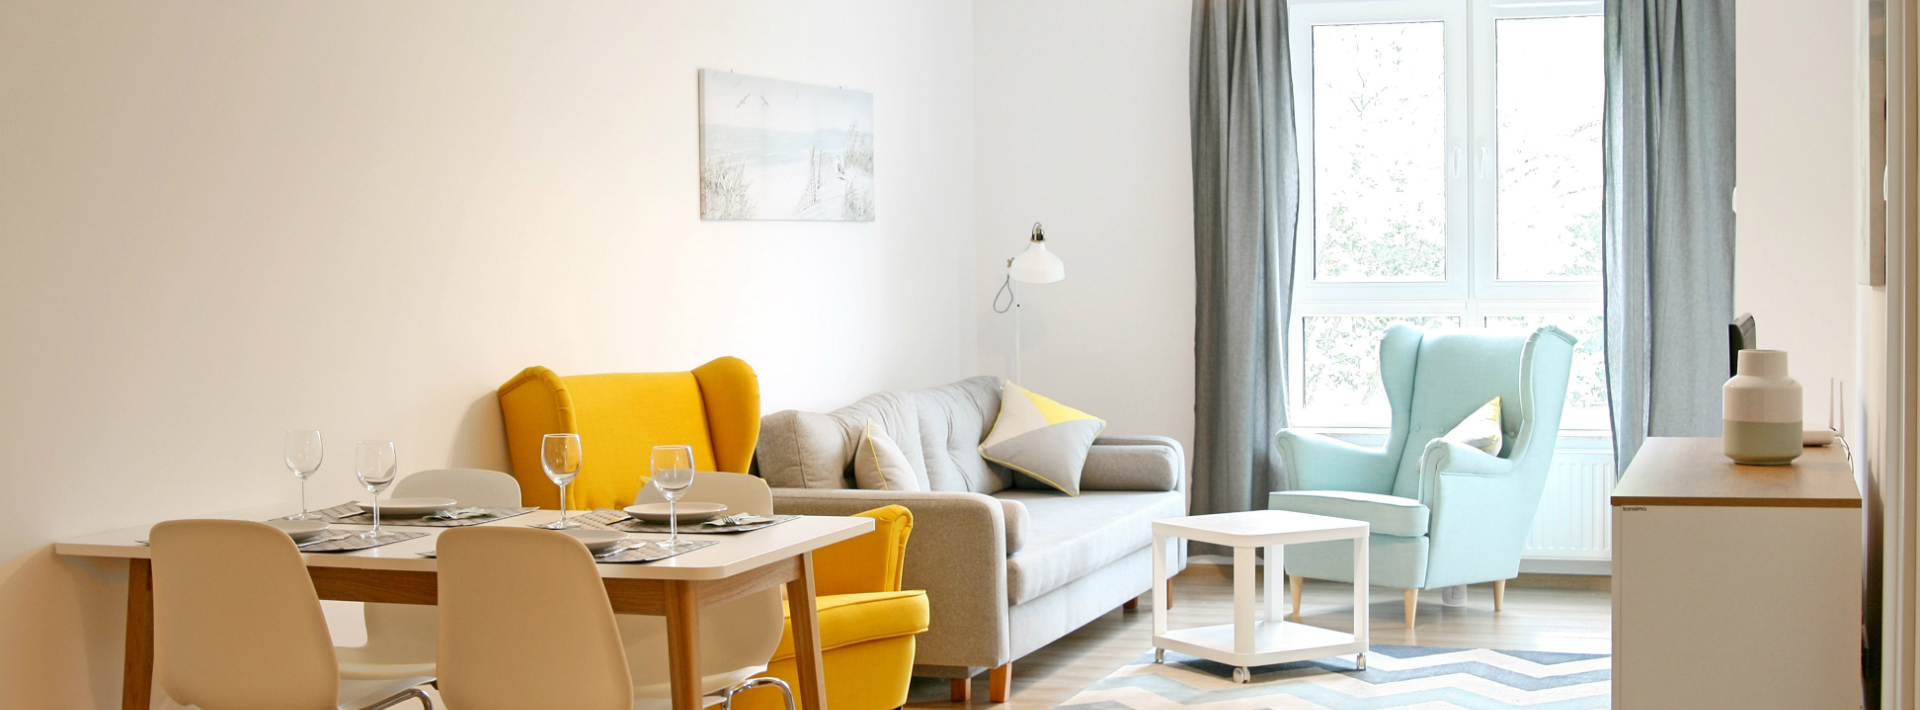 Apartament Portino w Kołobrzegu – komfortowy salon